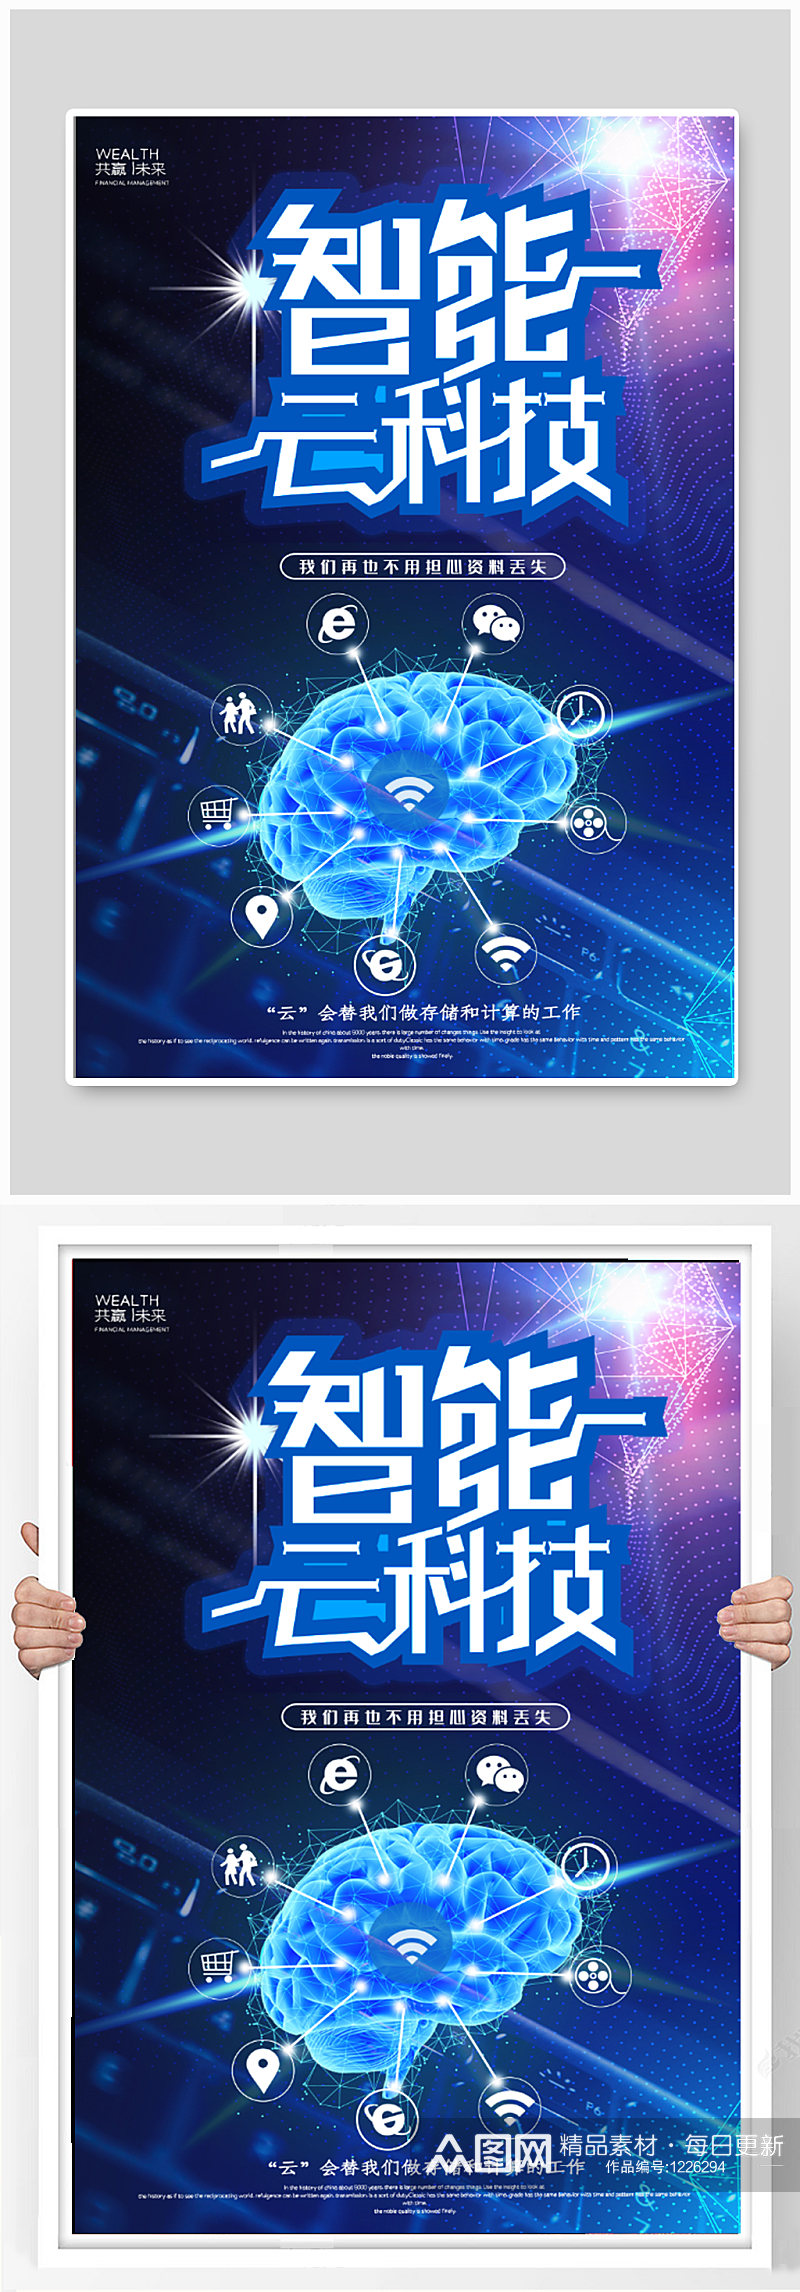 蓝色科技企业宣传海报素材